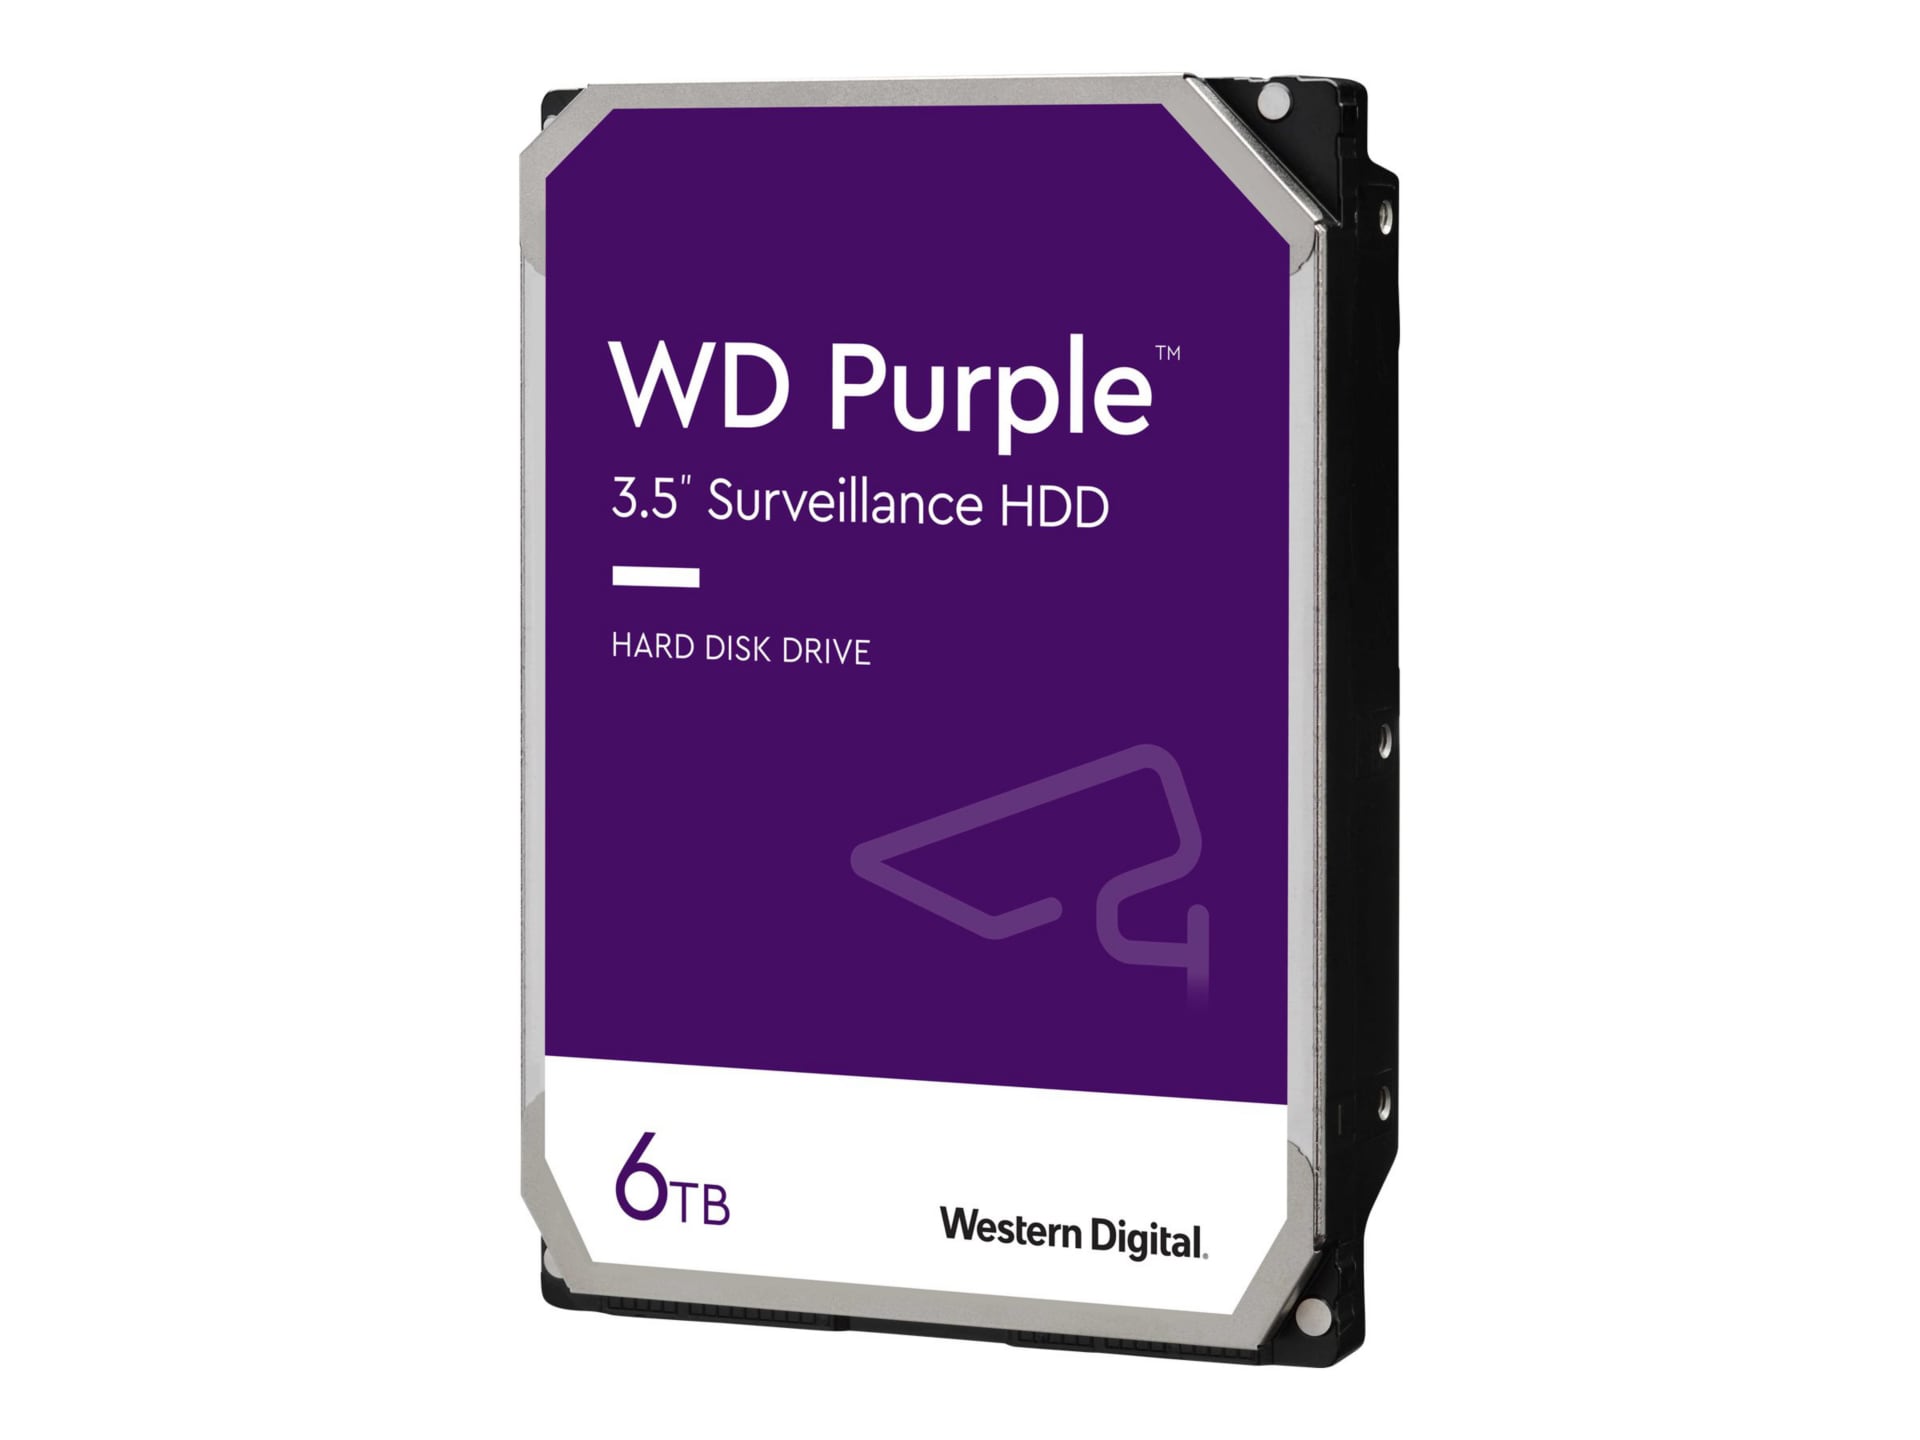 WD Purple WD64PURZ - hard drive - 6 TB - surveillance - SATA 6Gb/s